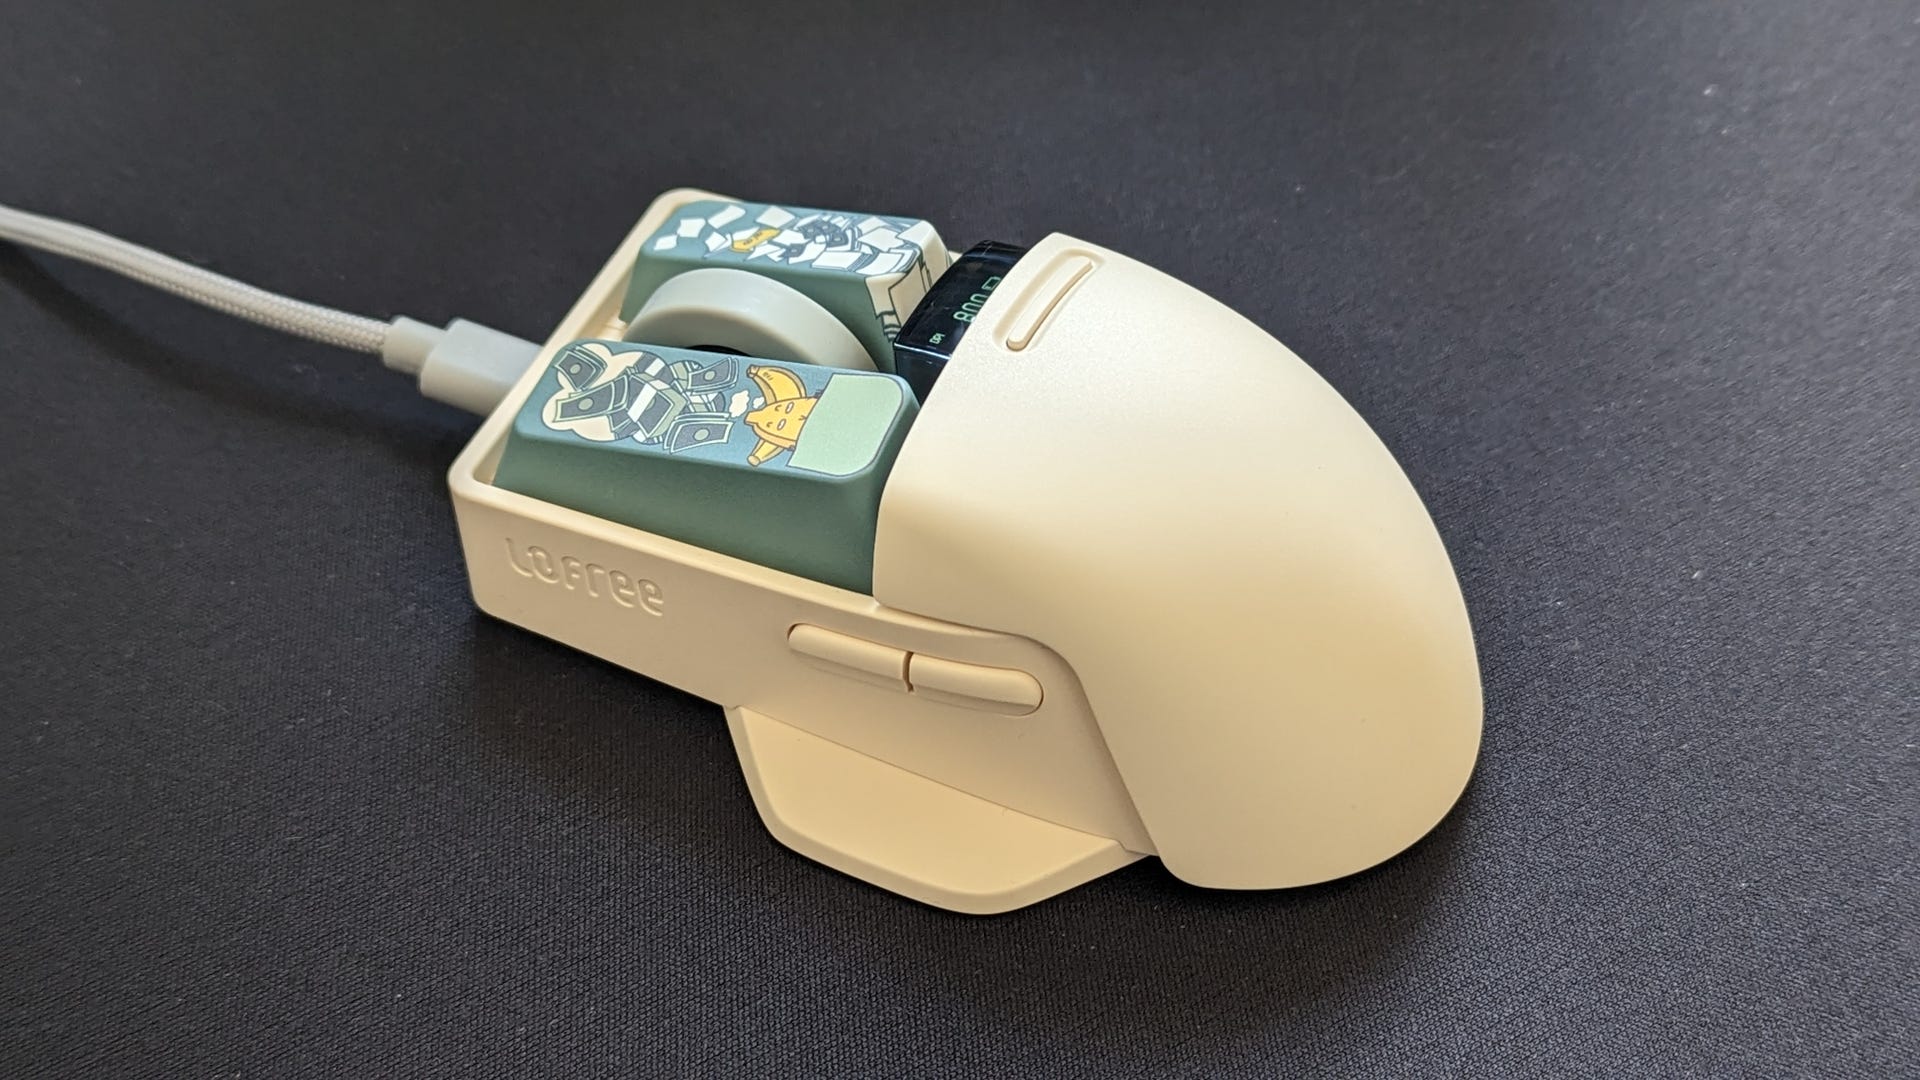 Revisiones tecnológicas extrañas: un mouse con teclas intercambiables, un keeb transparente y un altavoz que parece una PC para juegos